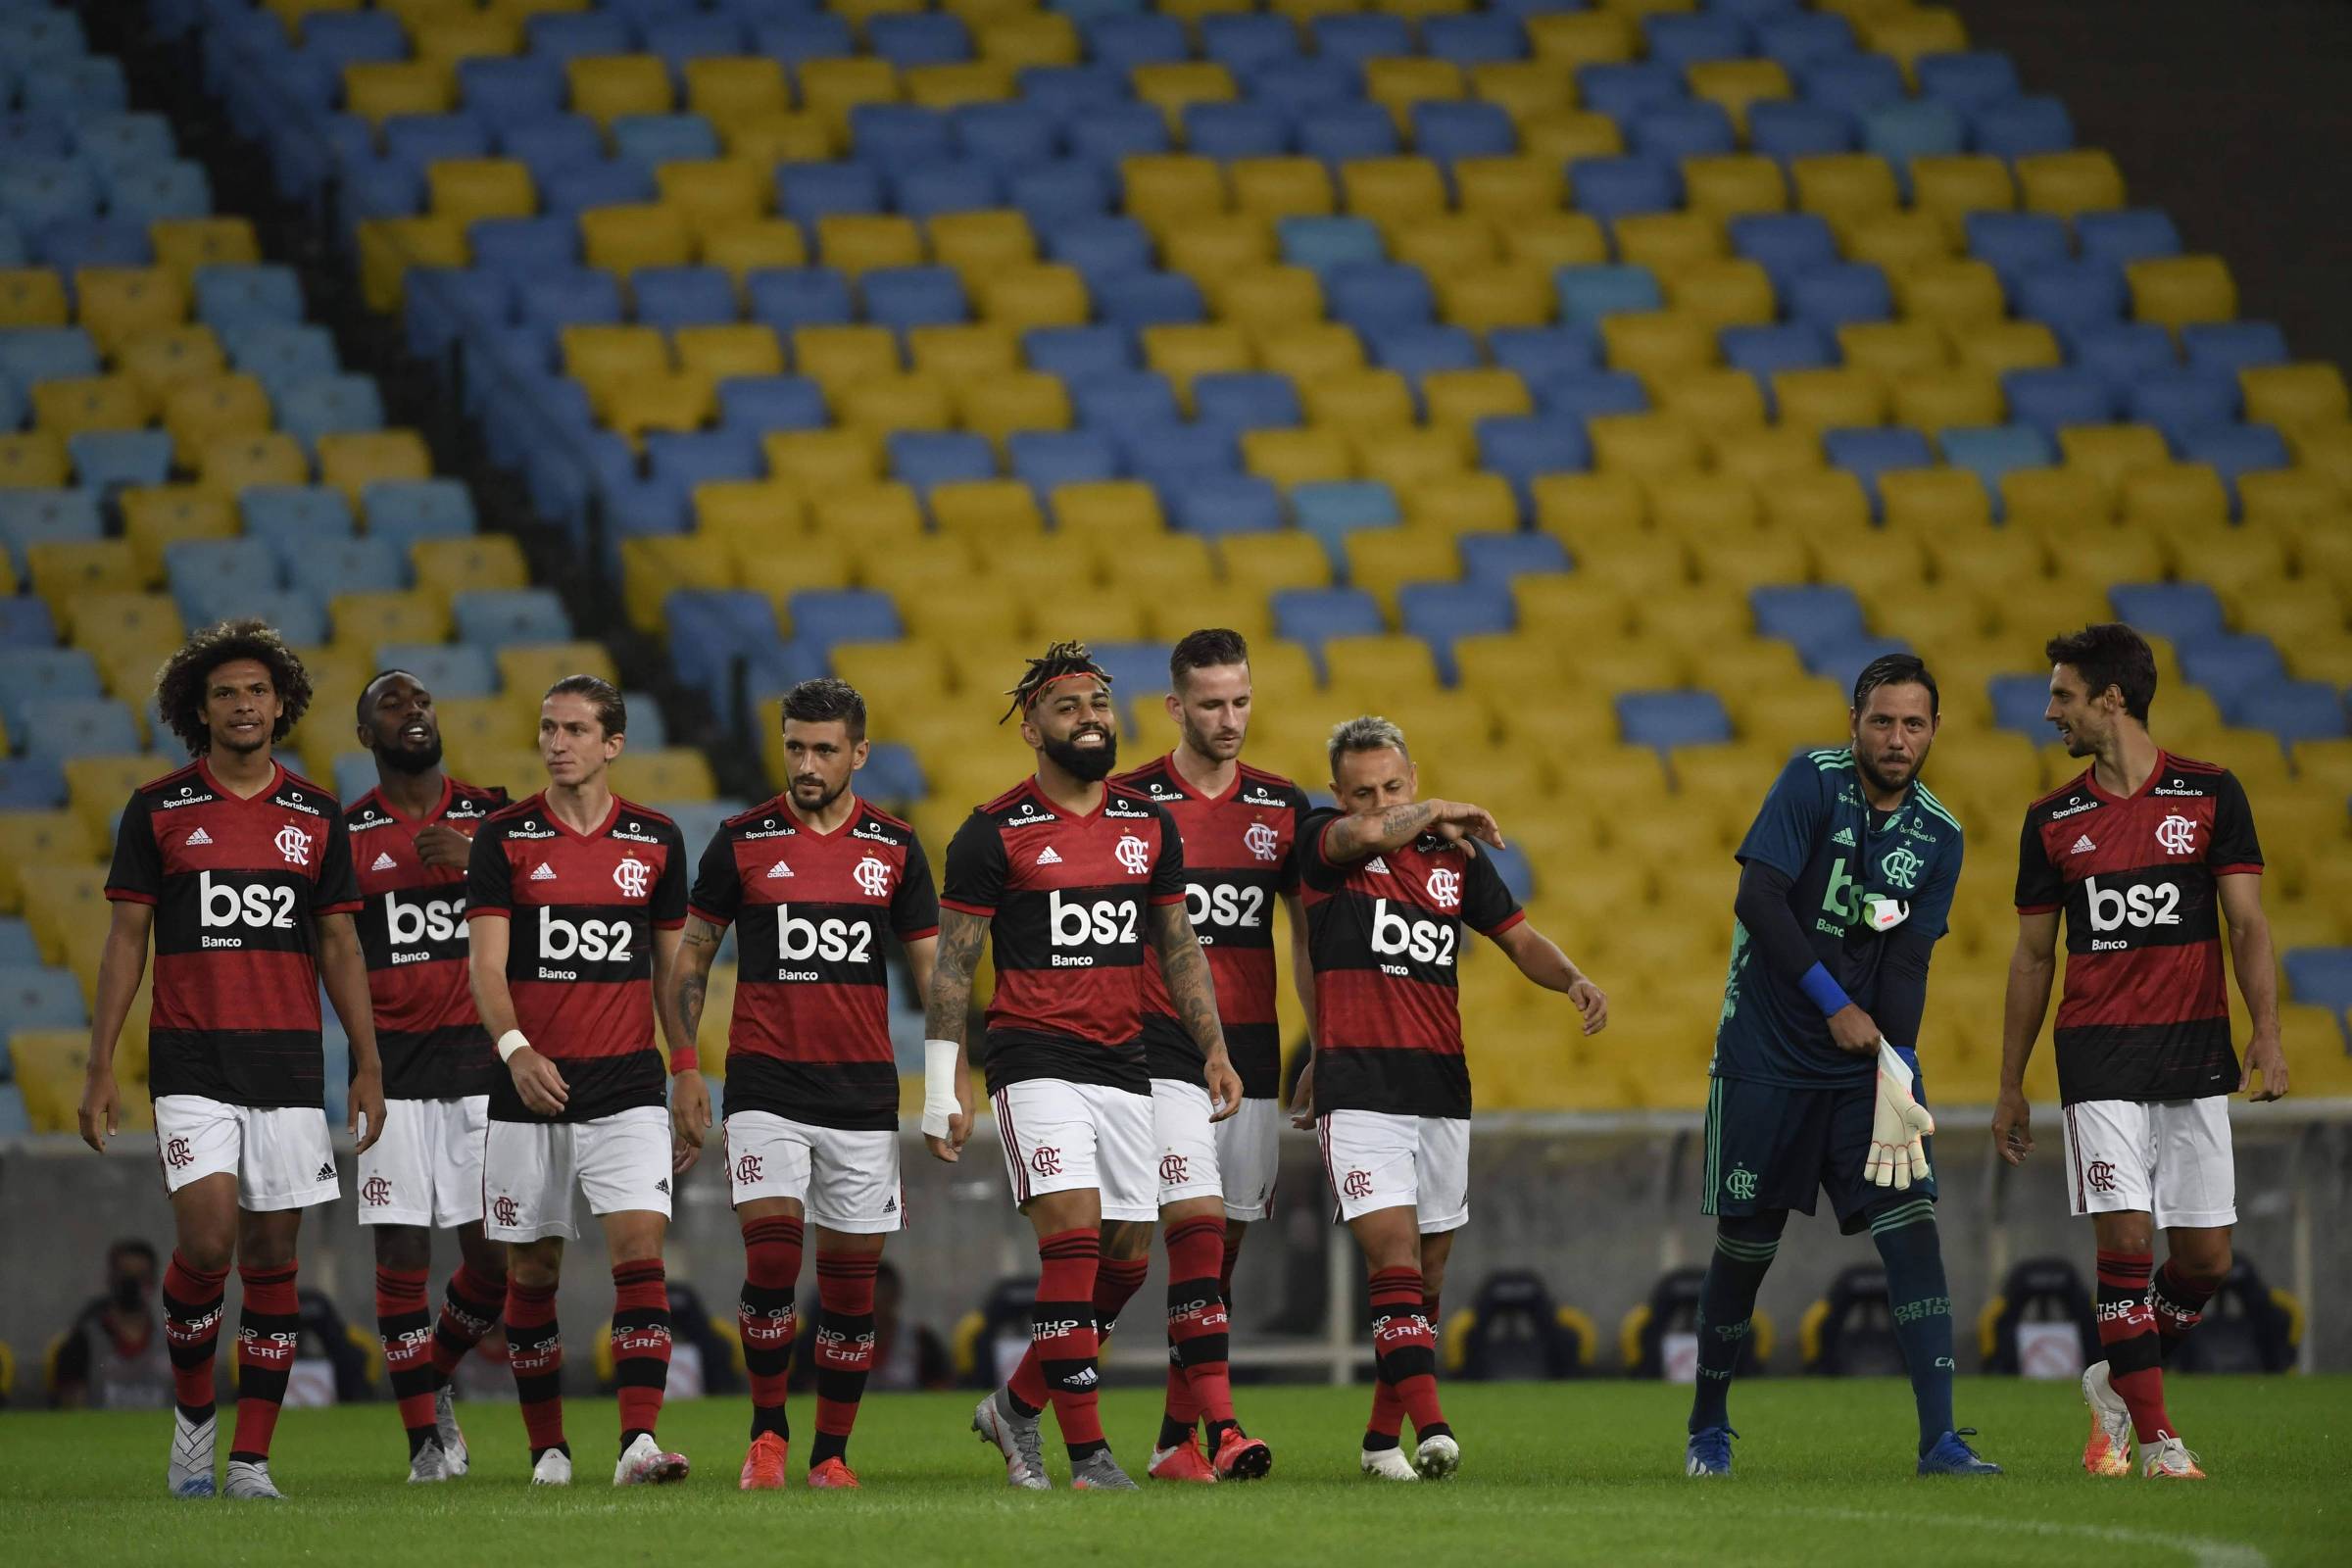 Flamengo transmite jogo no  com 2 milhões simultâneos e